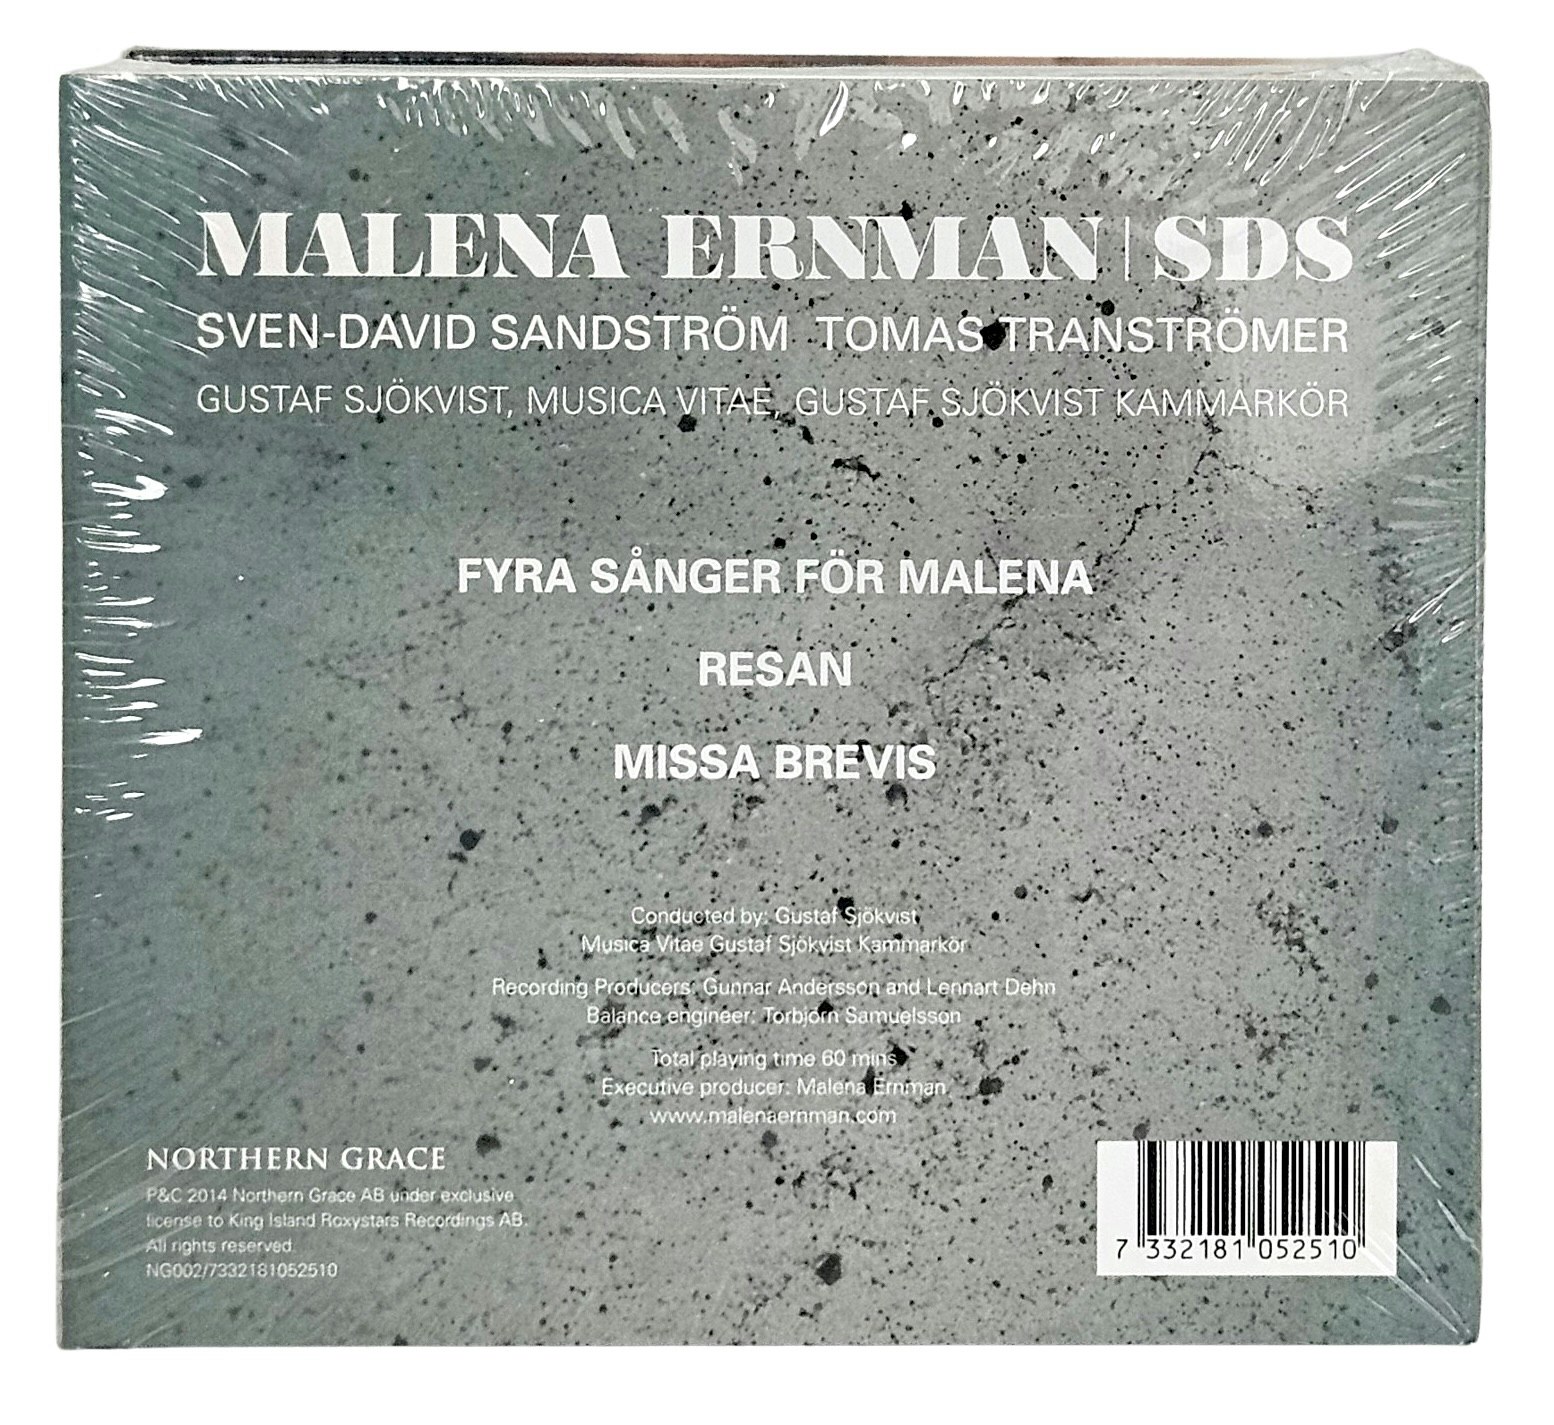 Malena Ernman, SDS, CD NY